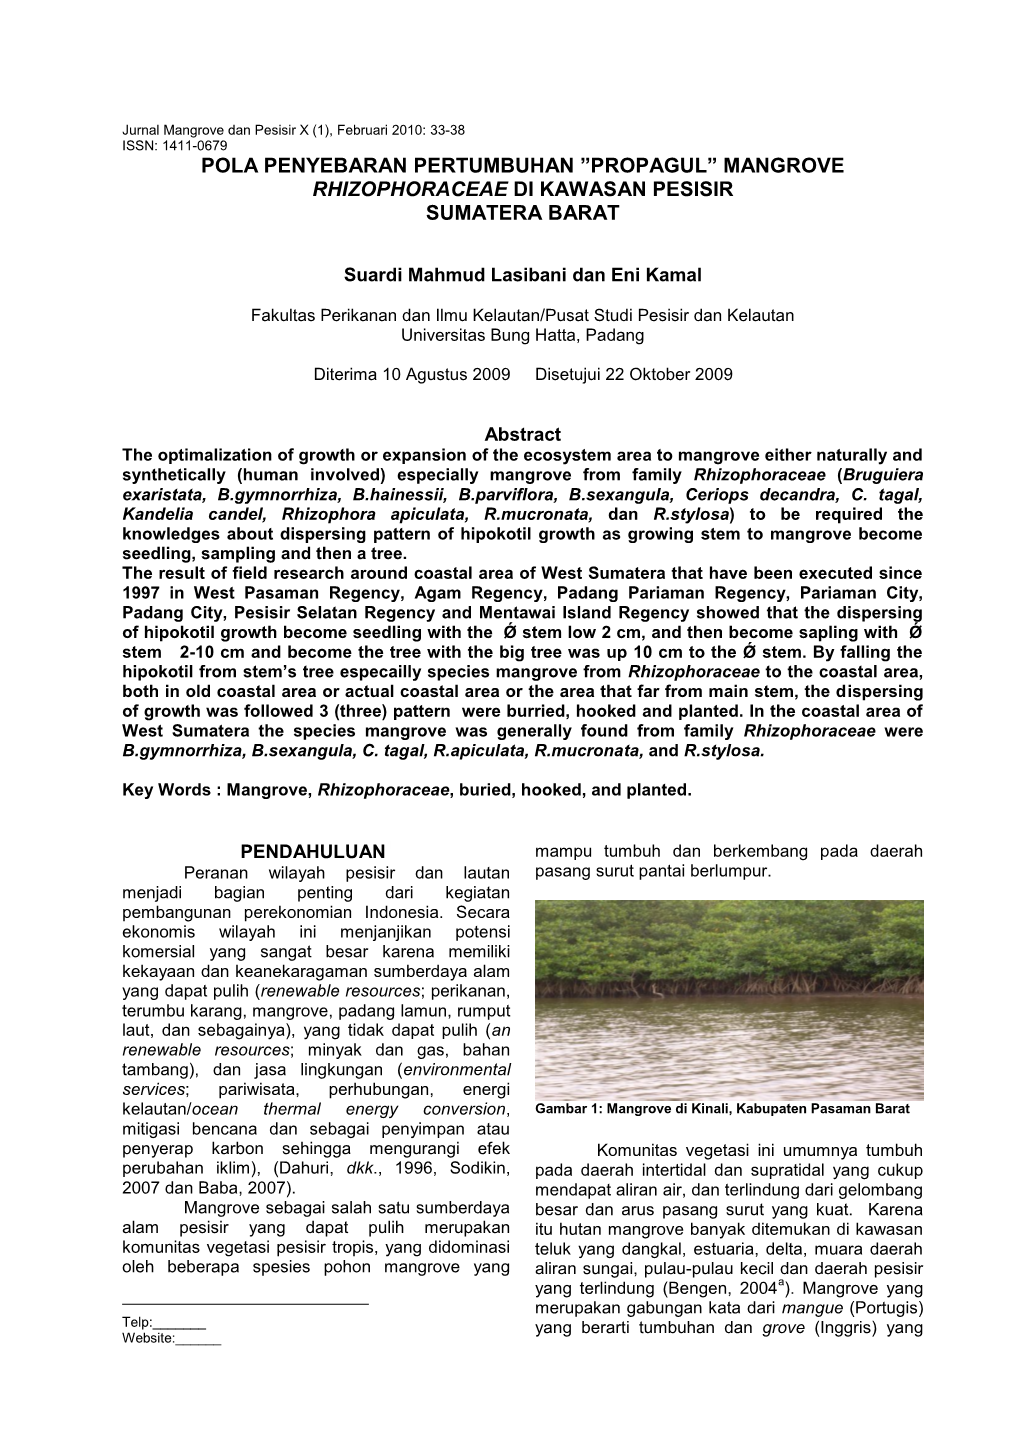 Pola Penyebaran Pertumbuhan ”Propagul” Mangrove Rhizophoraceae Di Kawasan Pesisir Sumatera Barat